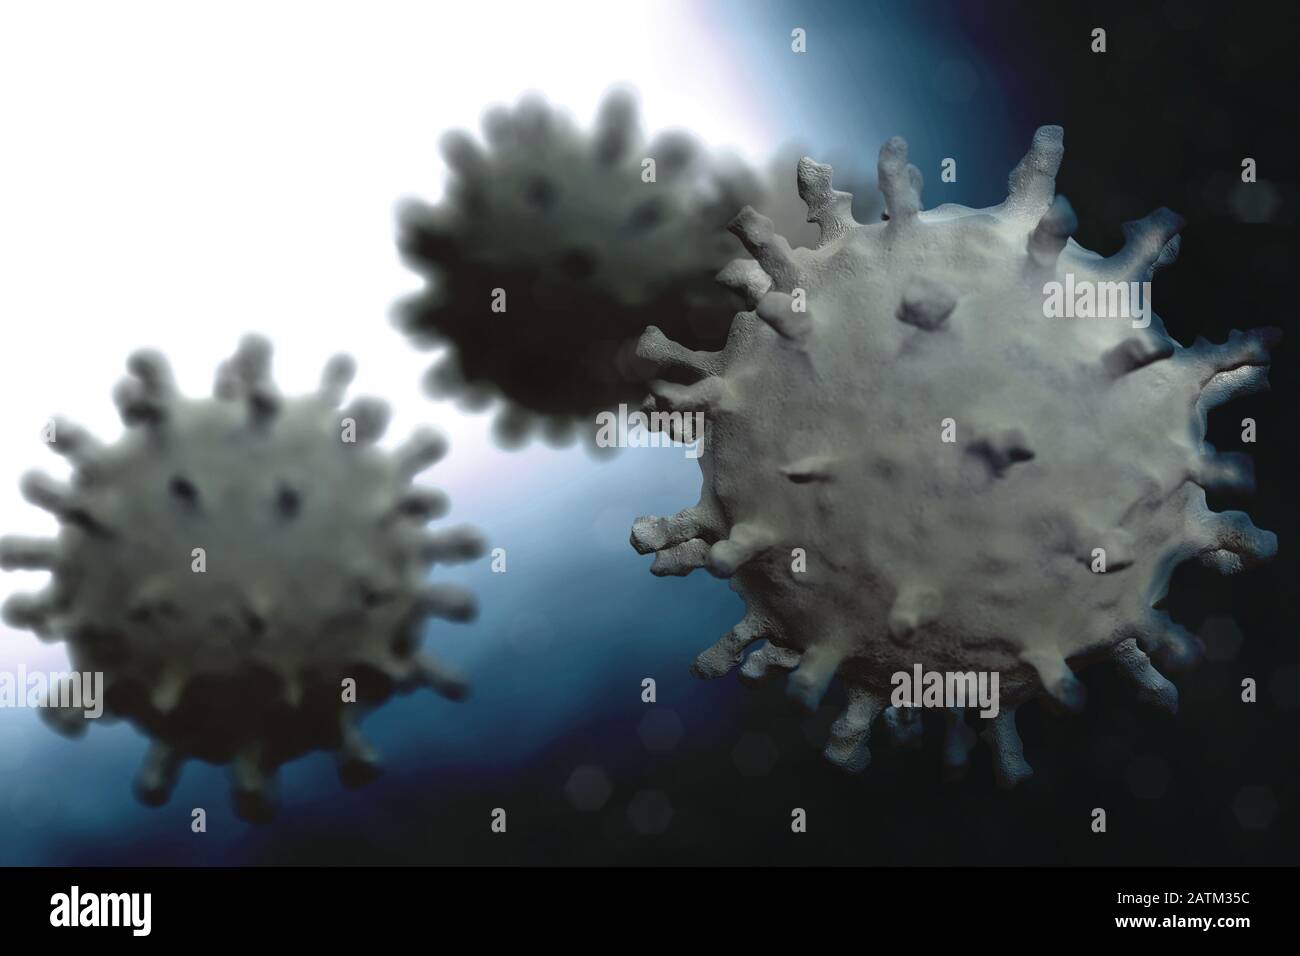 Wissenschaftliche Darstellung des Corona-Virus, 3D-Rendering auf der Grundlage mikroskopischer Bilder des Virus ab dem chinesischen Ausbruch im Jahr 2020 Stockfoto